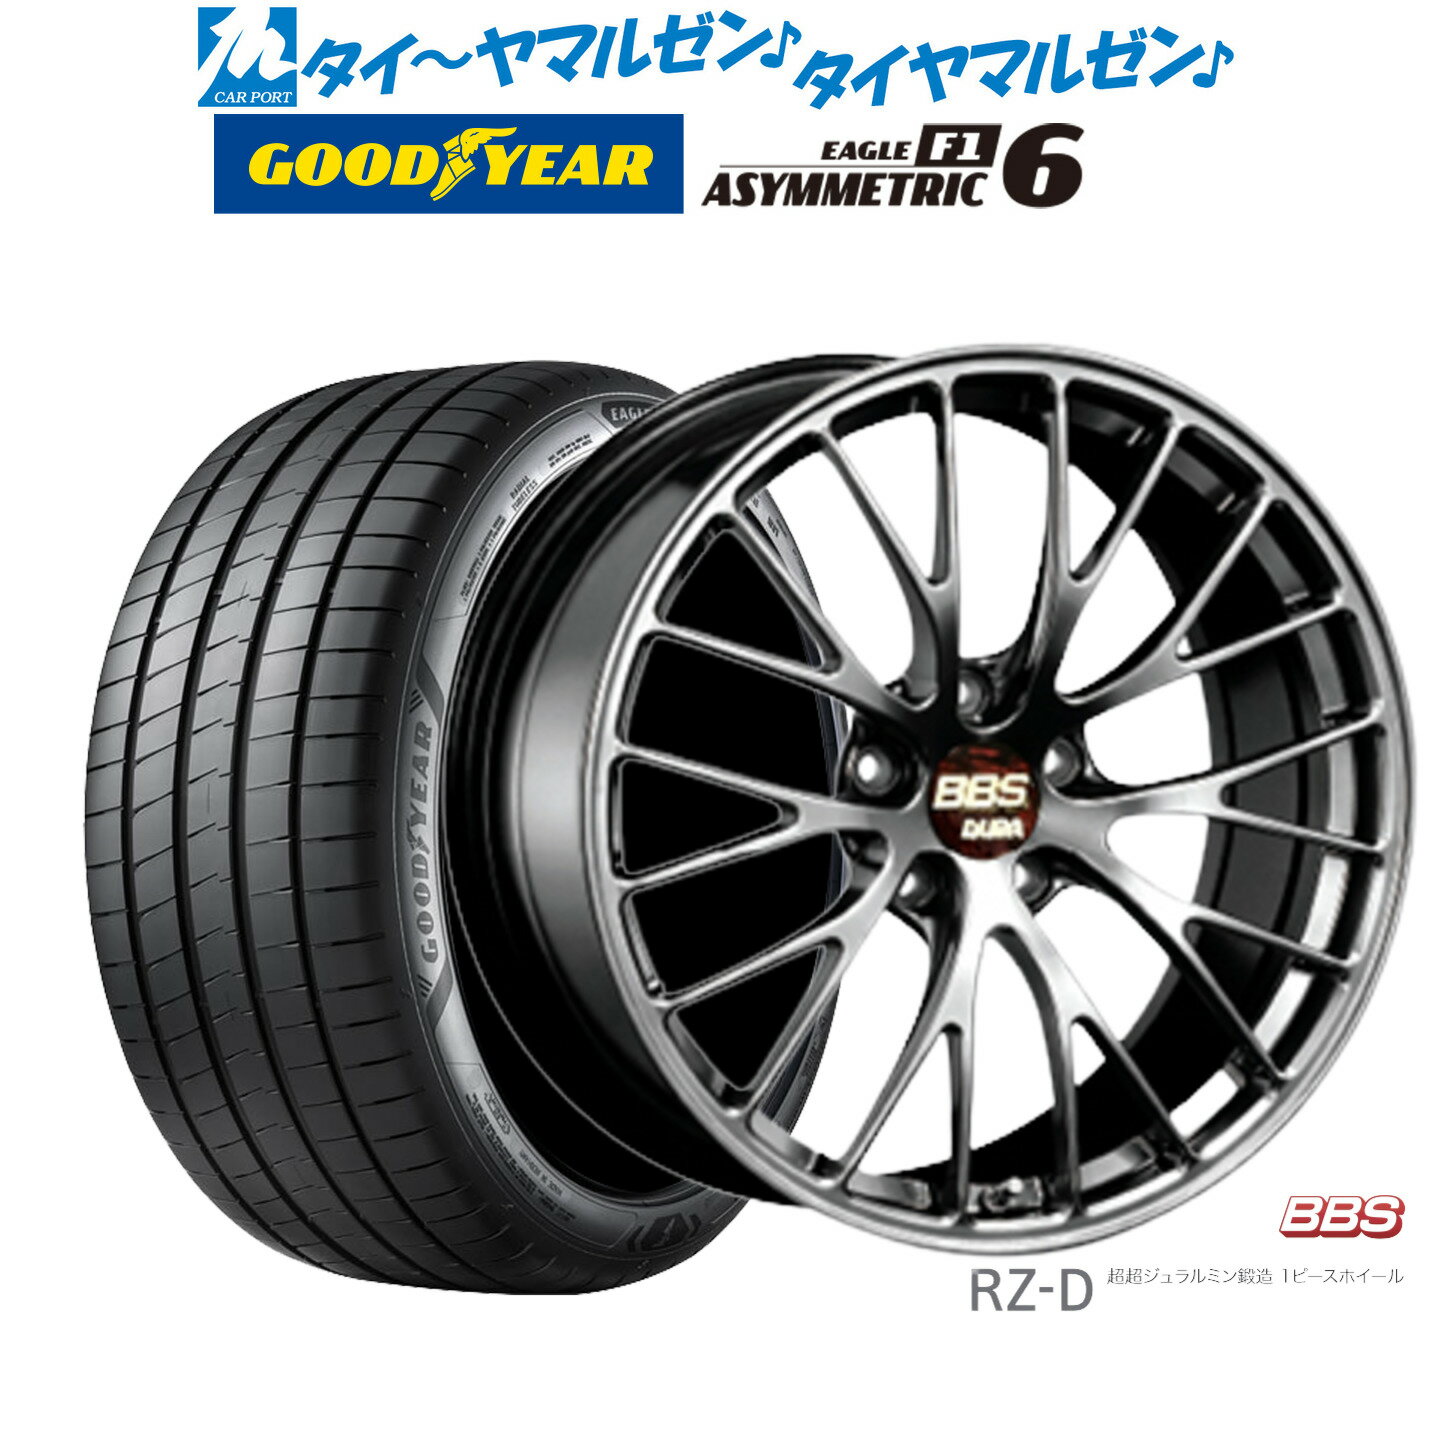 新品 サマータイヤ ホイール4本セットBBS JAPAN RZ-D19インチ 8.5Jグッドイヤー イーグル F1 アシメトリック6235/35R19